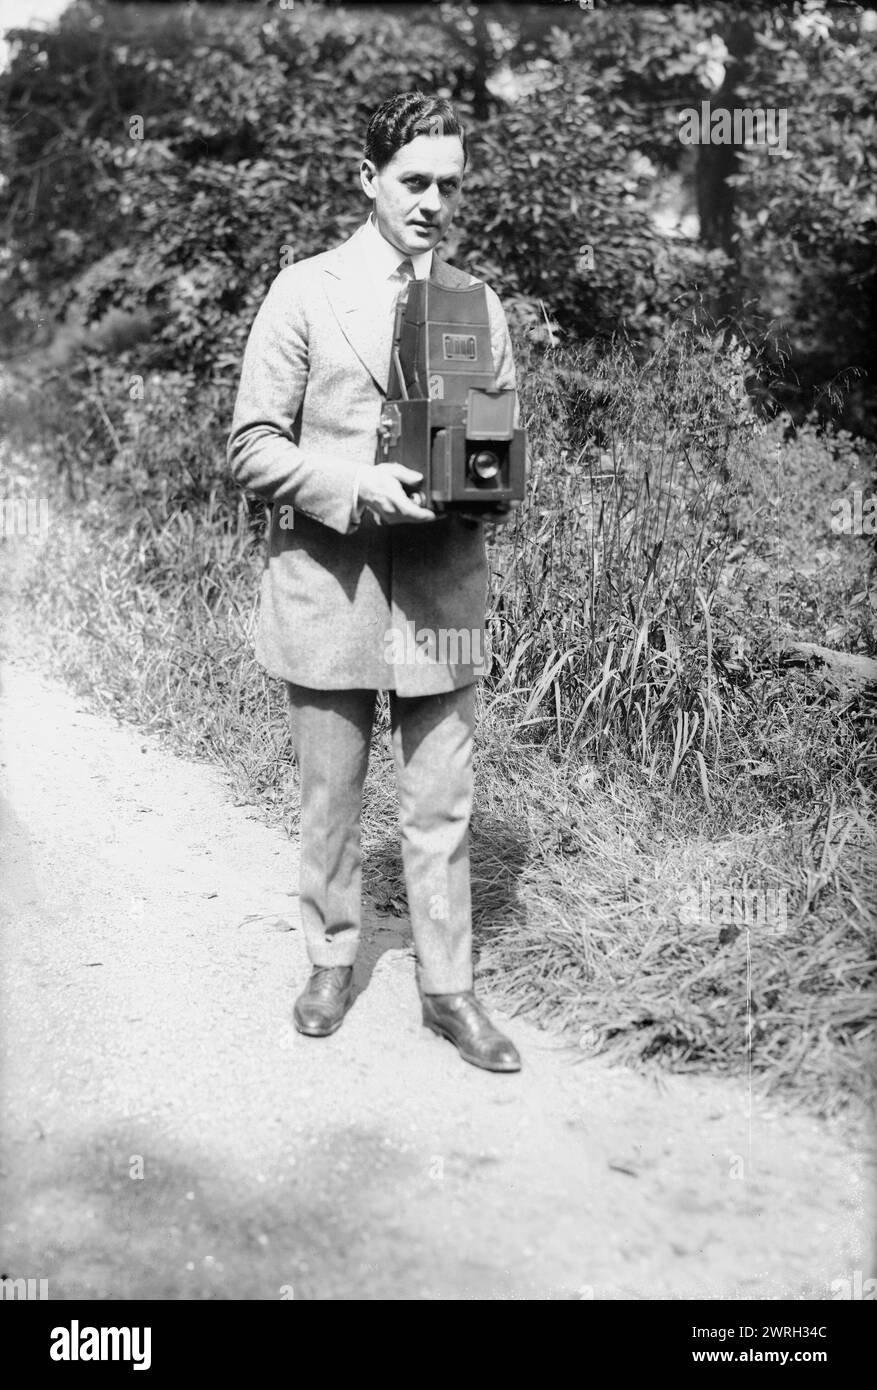 Asche, zwischen 1915 und 1920. Zeigt den Schauspieler Sam Ash (1884–1951), der auch in Varieté und Film auftrat. Ash hält eine Kamera. Stockfoto